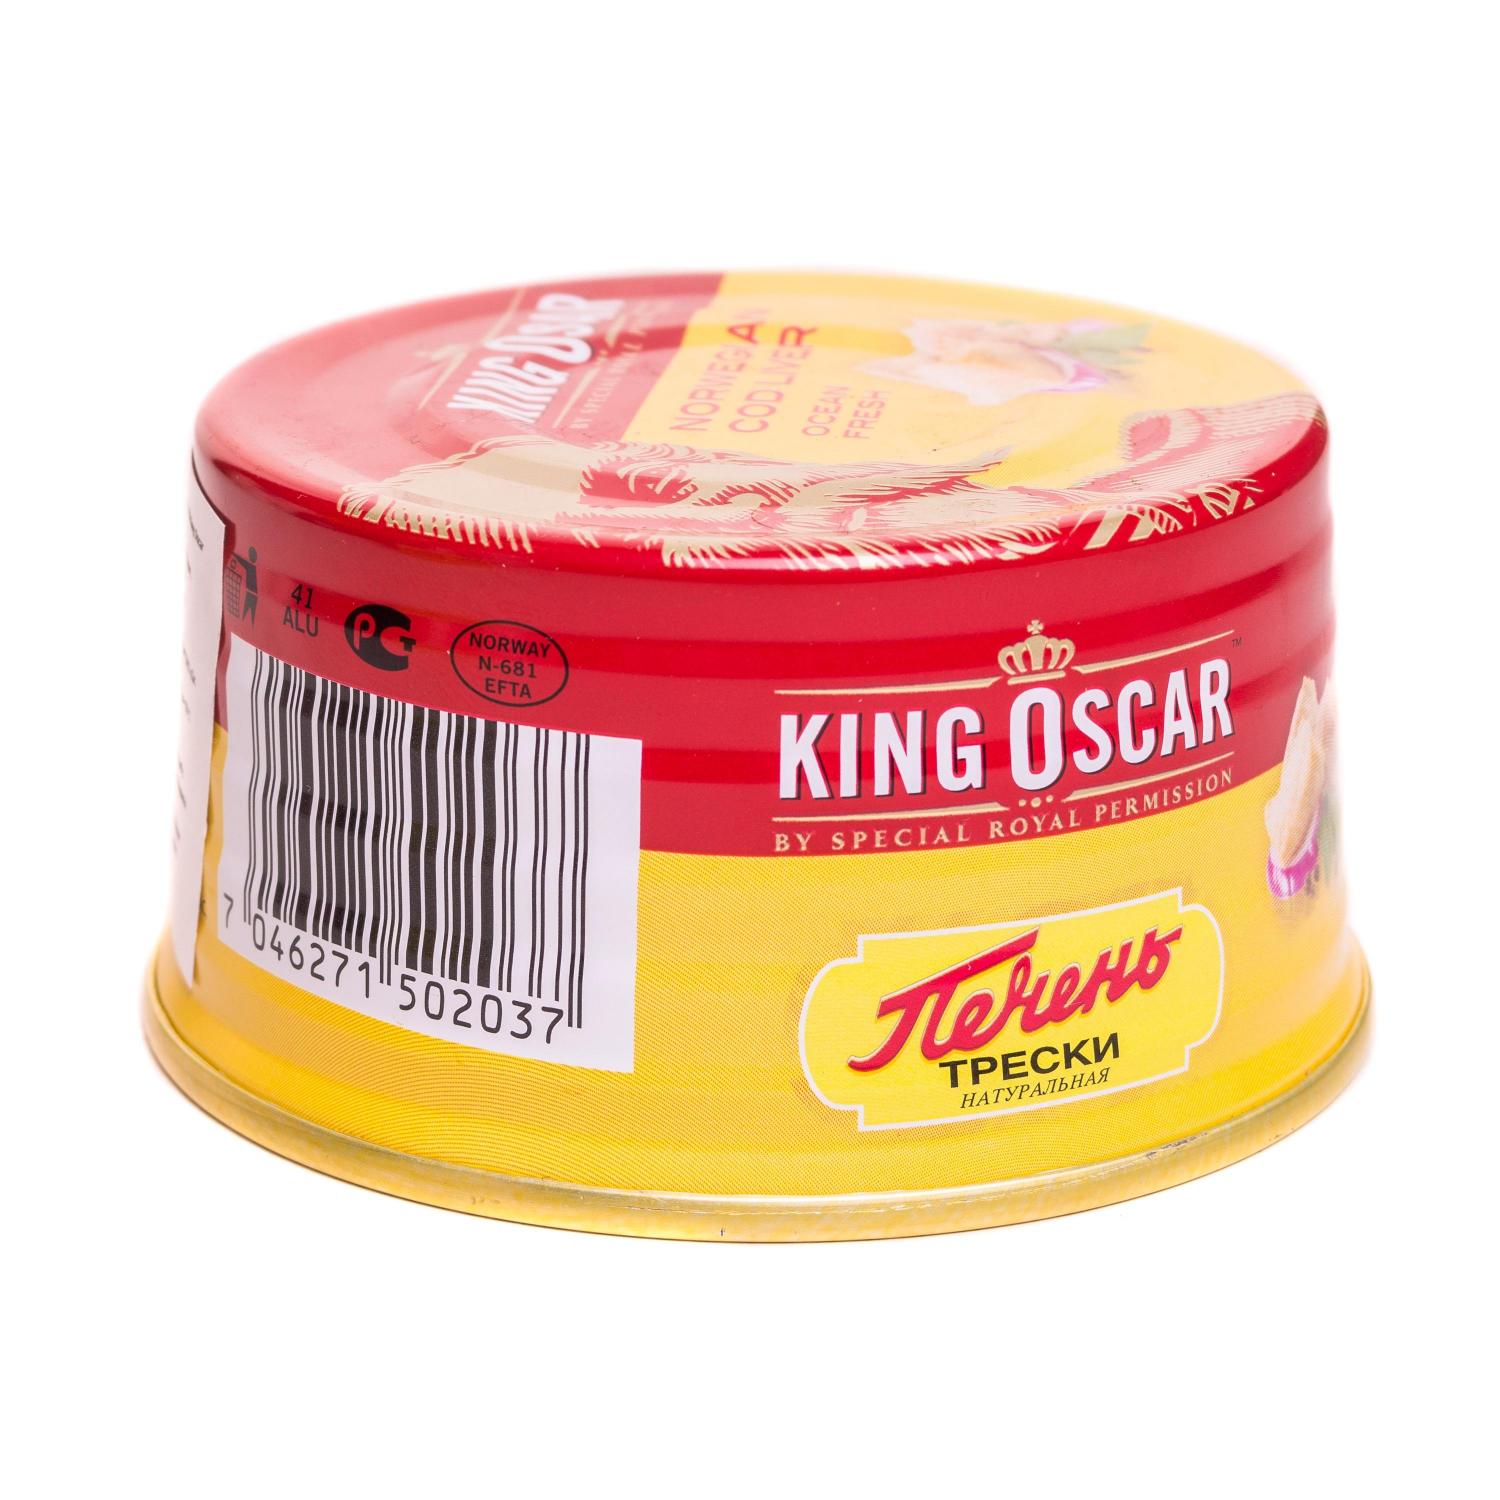 Печень трески King Oscar 190 г (566553) - фото 2